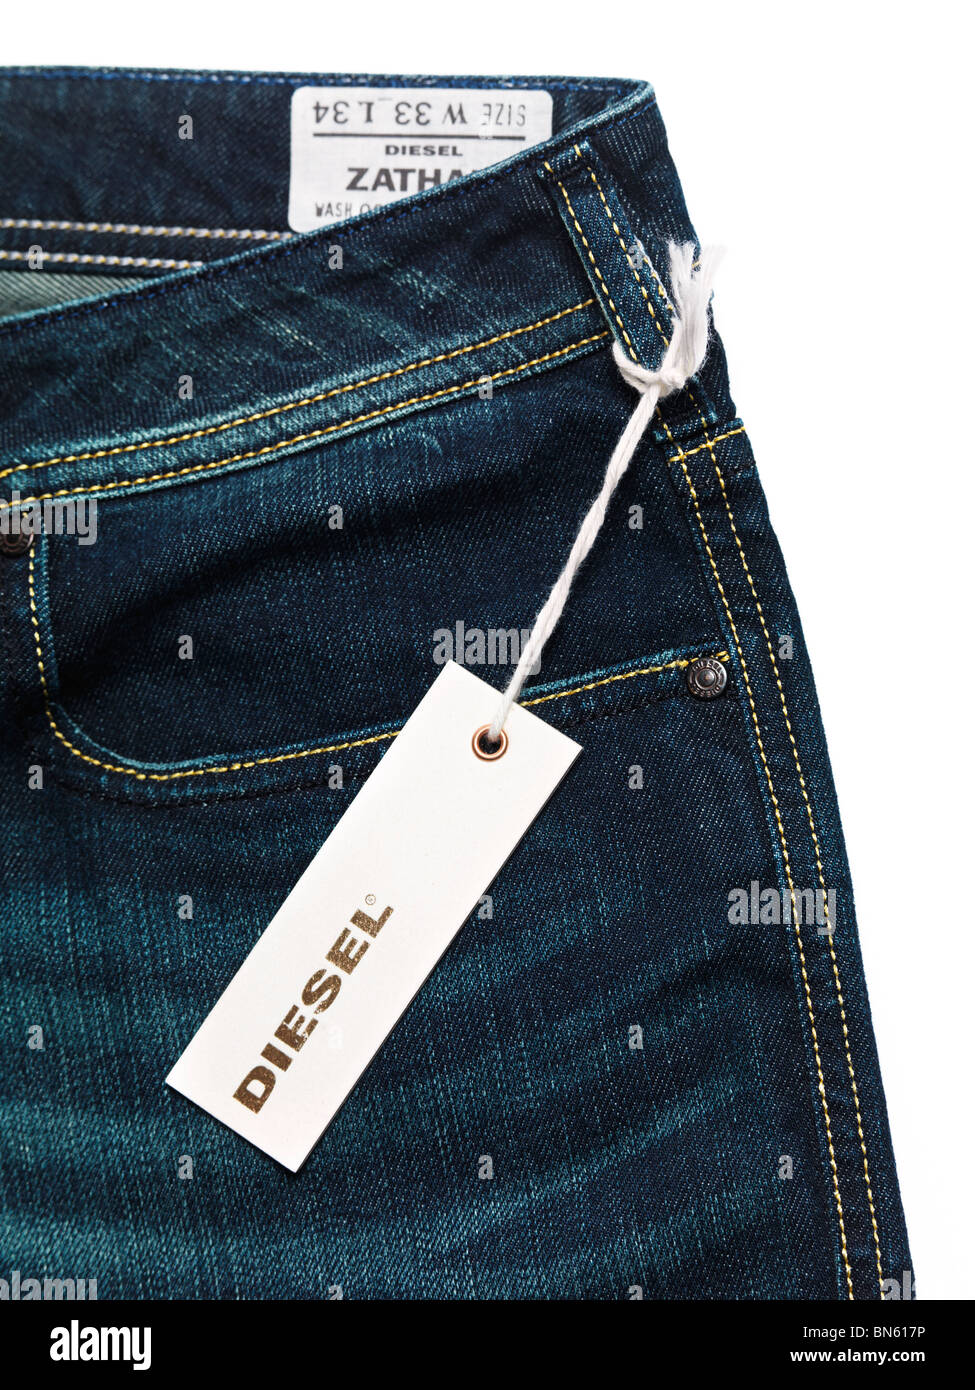 Étiquette sur dark blue jeans Diesel isolé sur fond blanc Banque D'Images